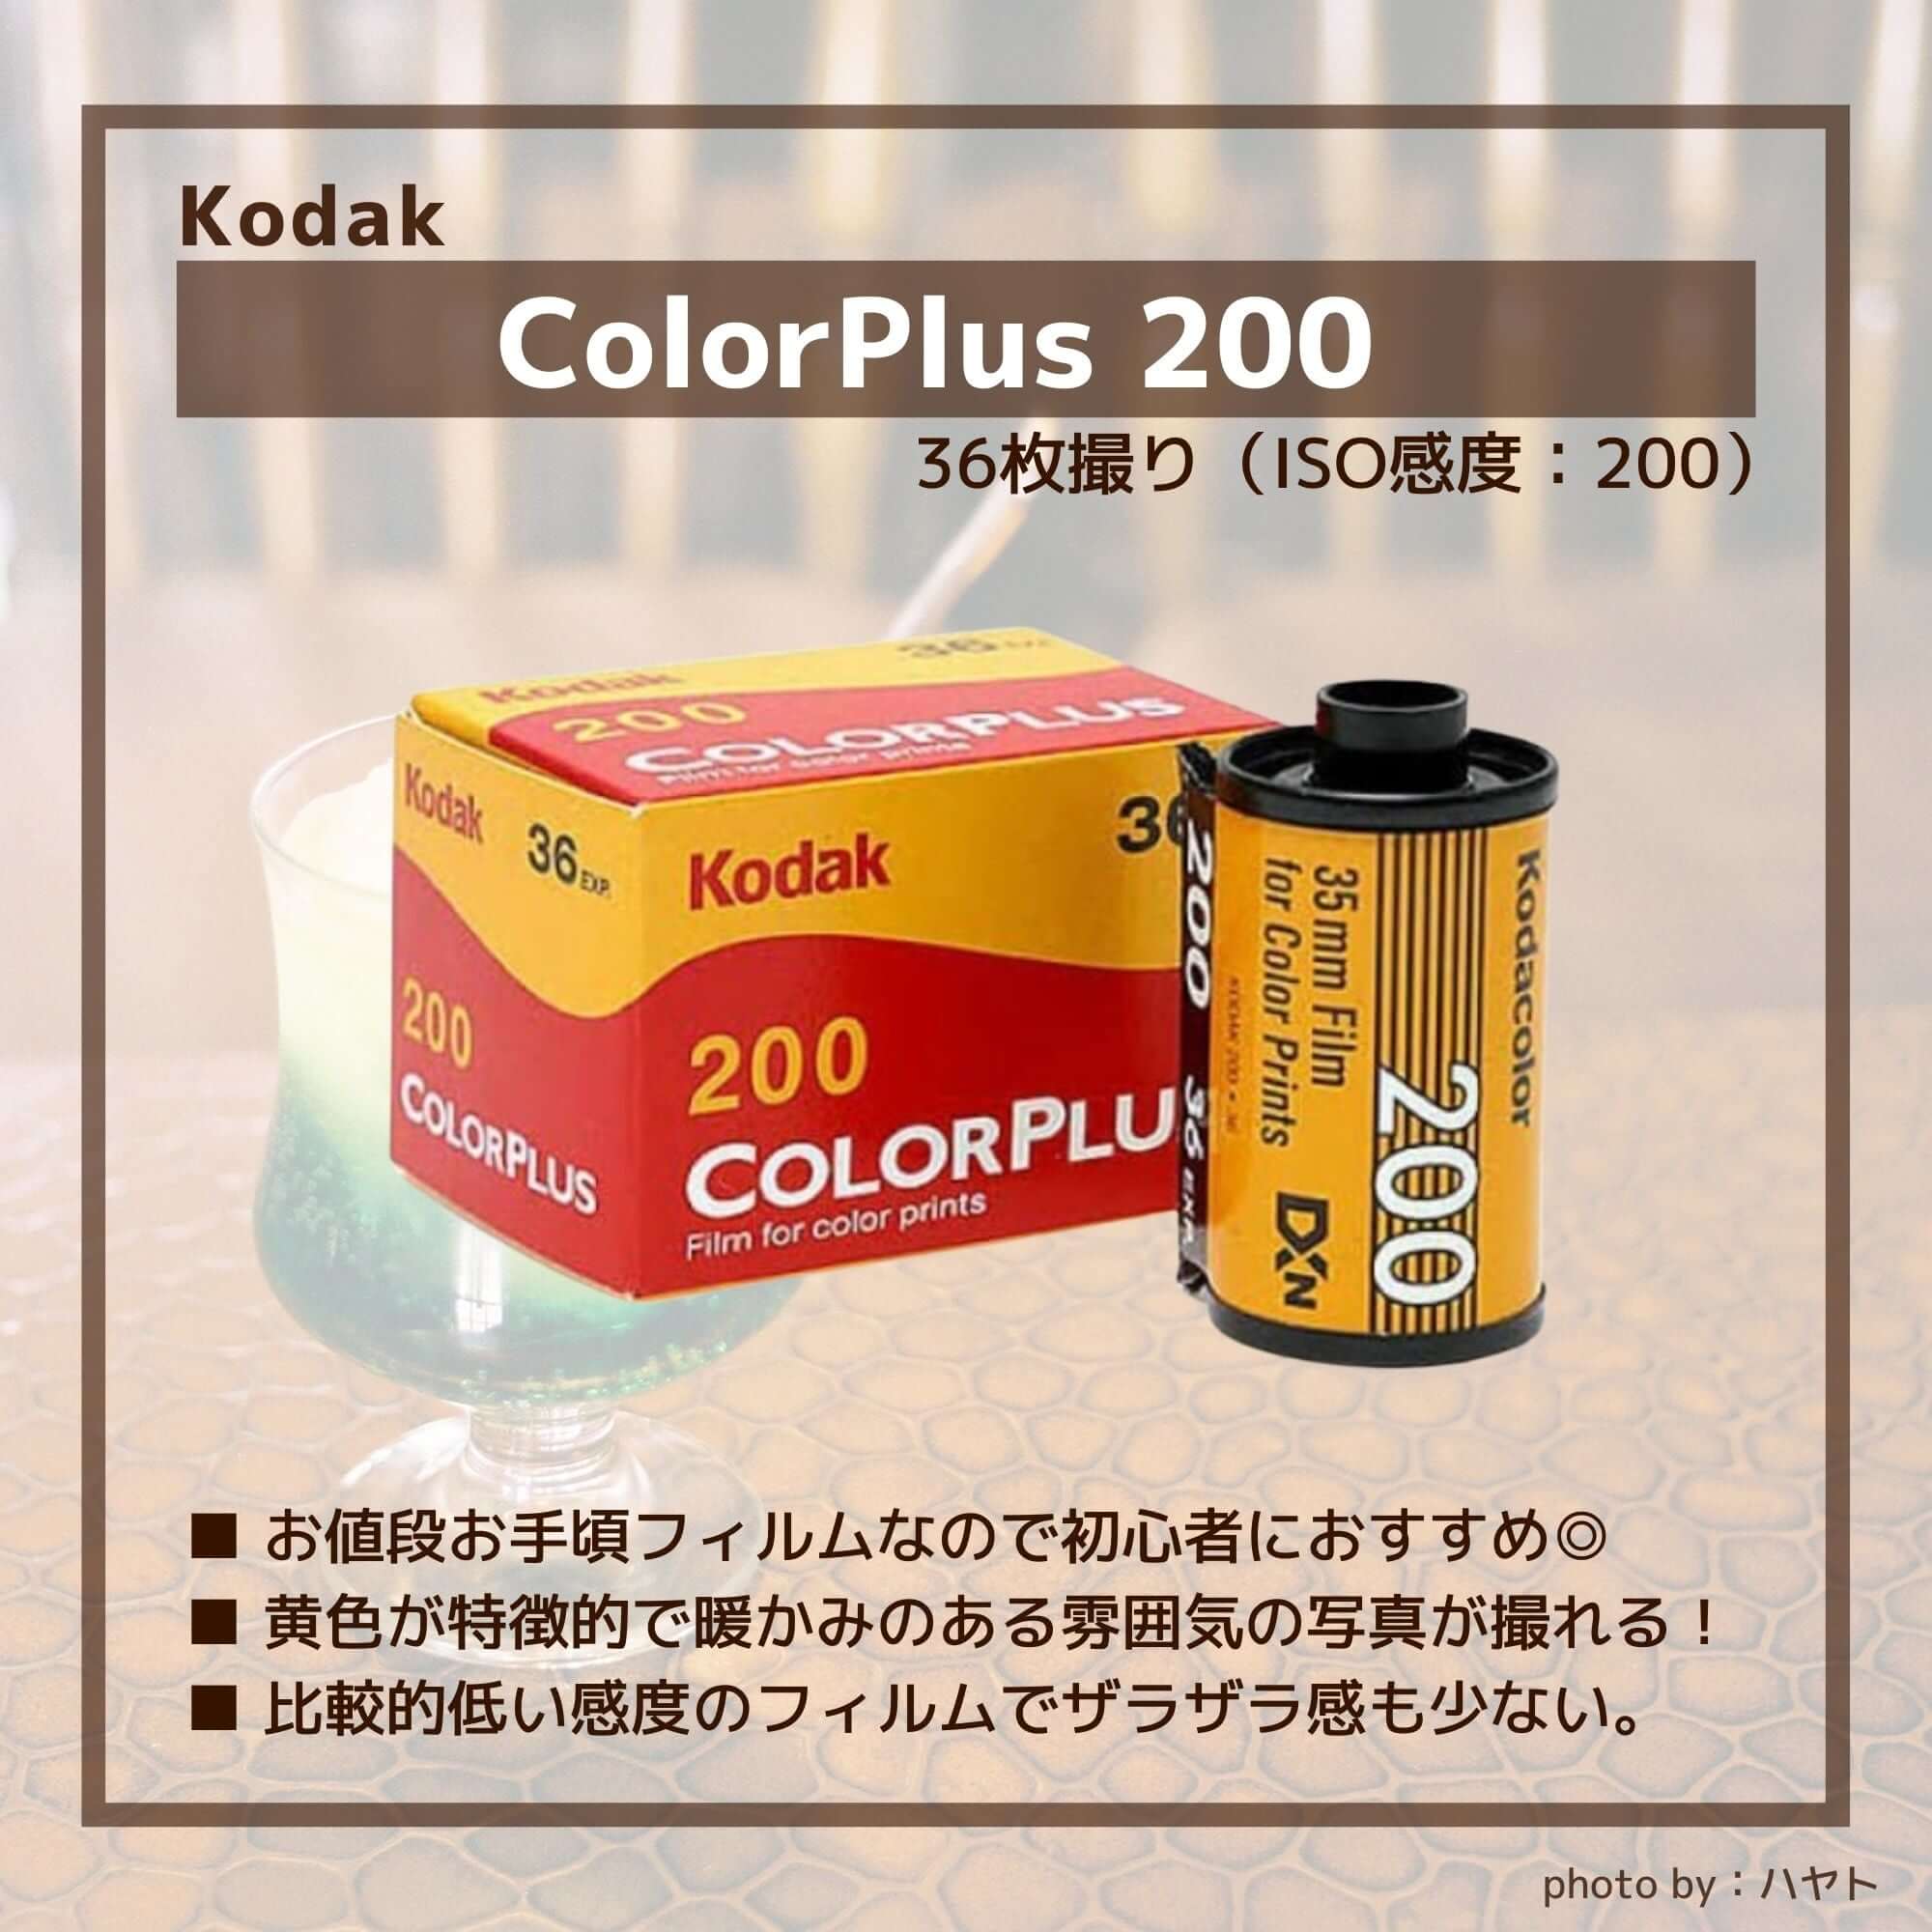 COLORPLUS 200 135 36枚撮り / カラーネガフィルム – サトカメ